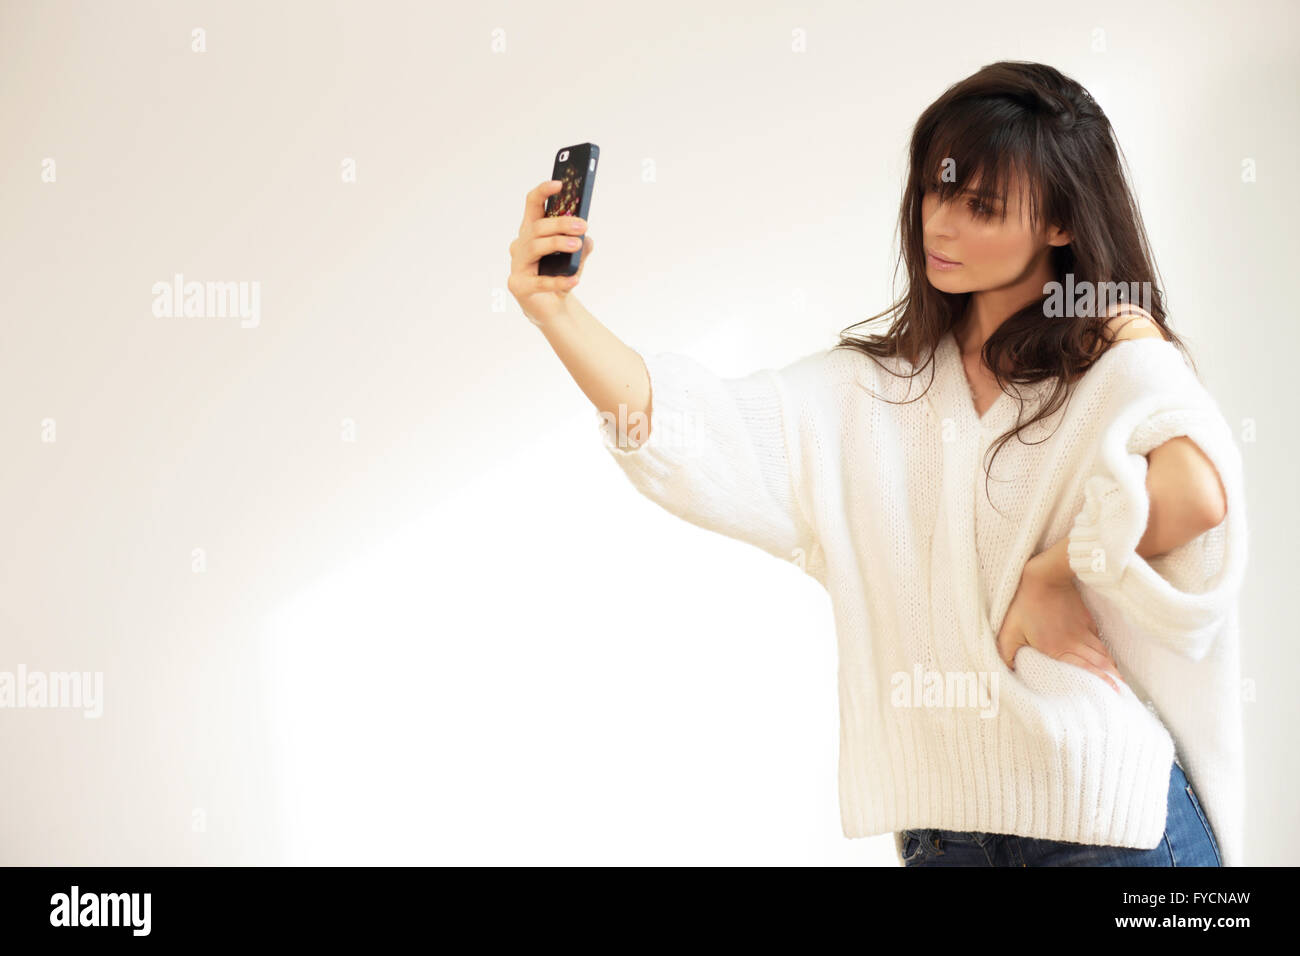 Girl taking selfie. Natural light. Stock Photo